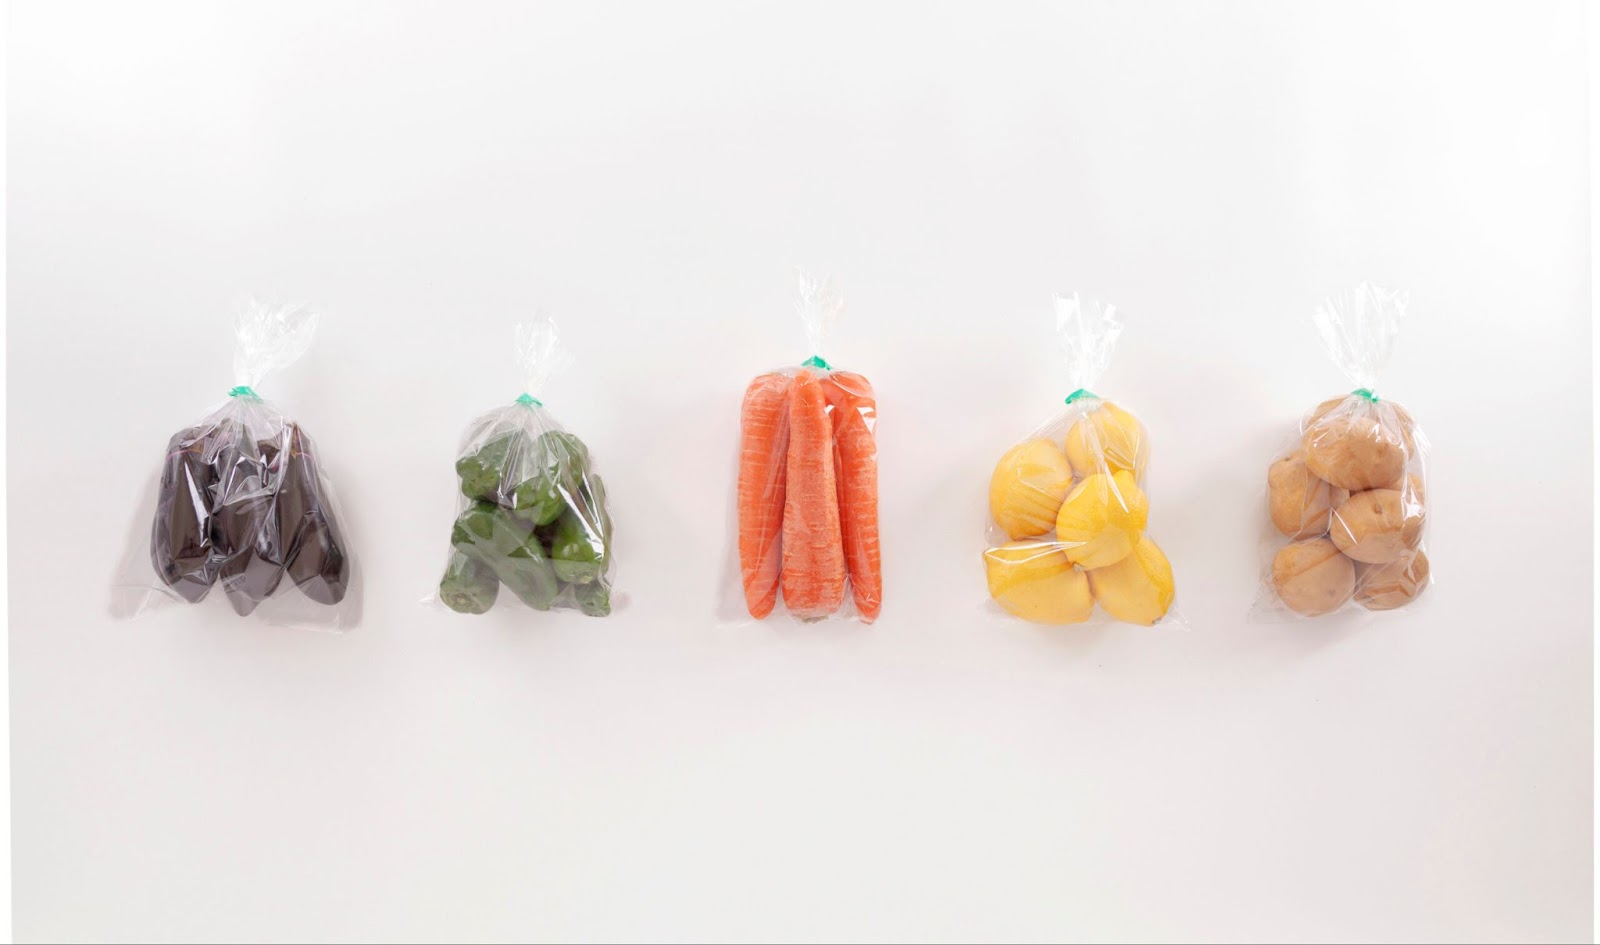 野菜の包装資材の種類6つ。消費者に手に取ってもらう包装資材の選び方とは